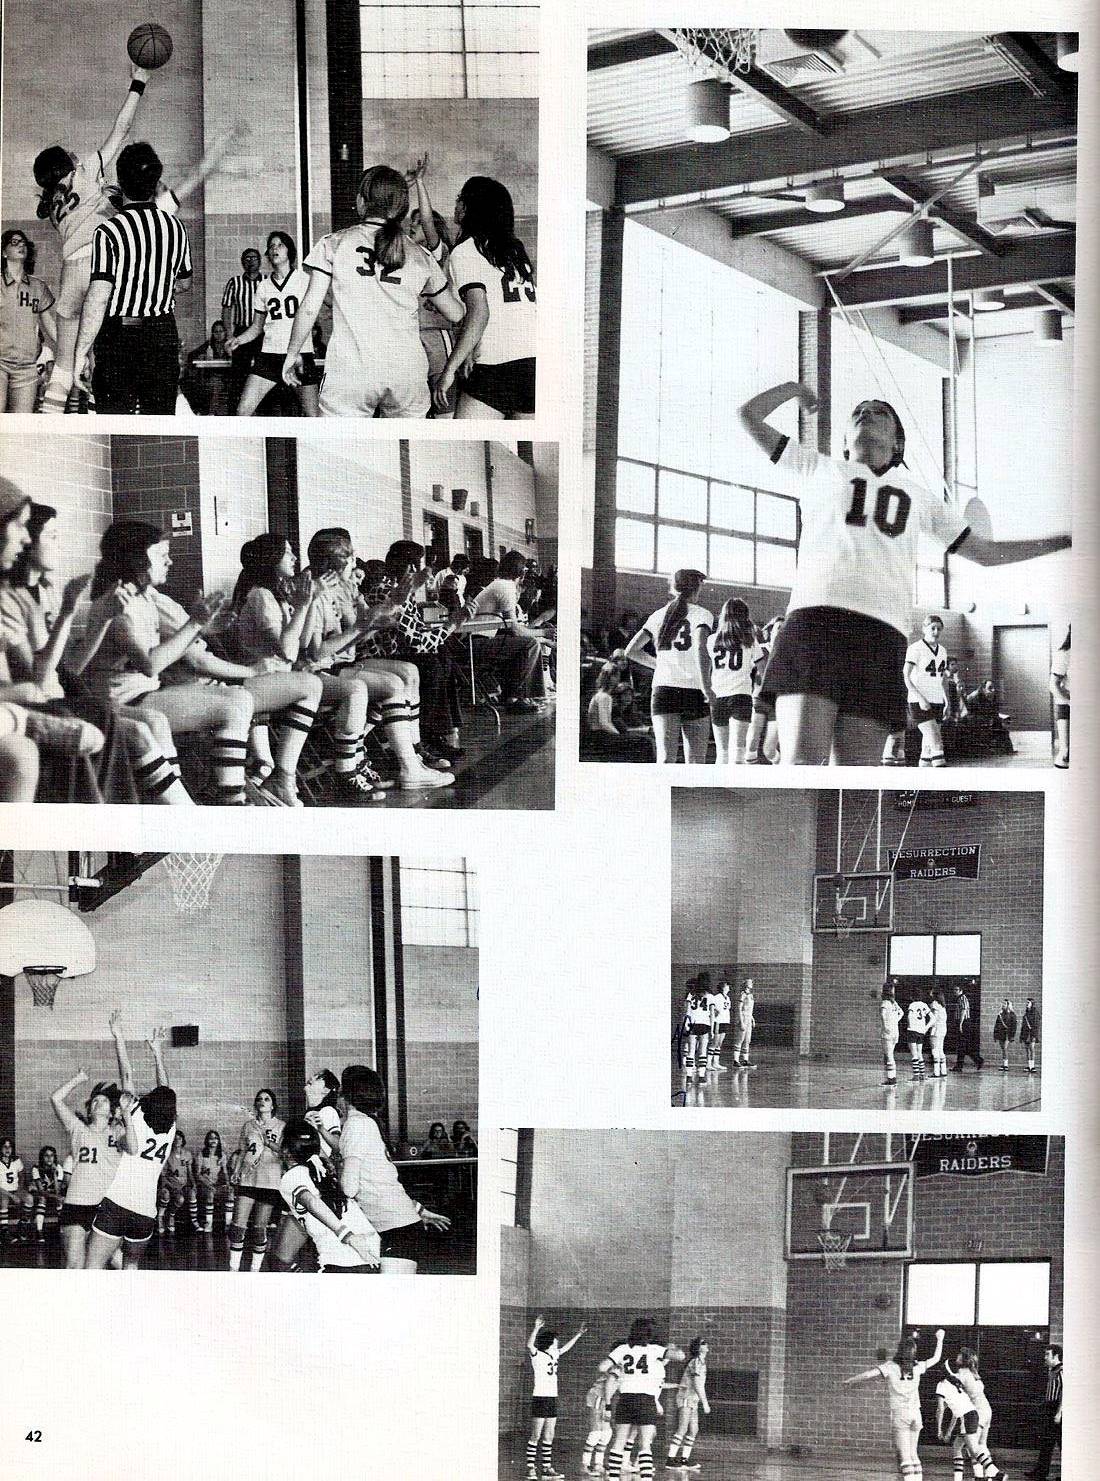 Elizabeth Seton High School Class of 1976